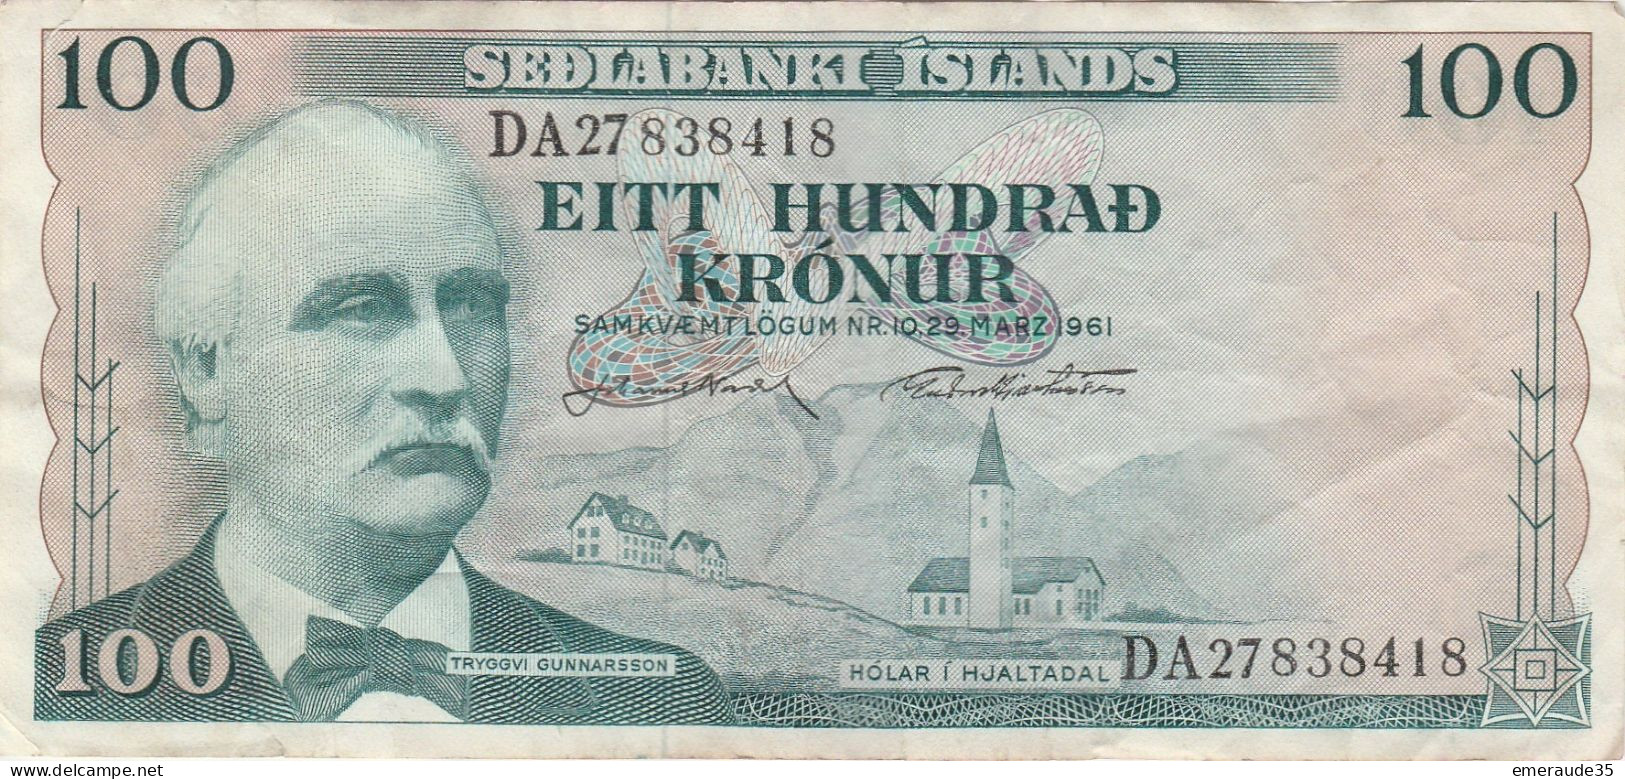 Billet 100 SEDLABANKI ISLANDS DA 27838418 1961 - Islanda